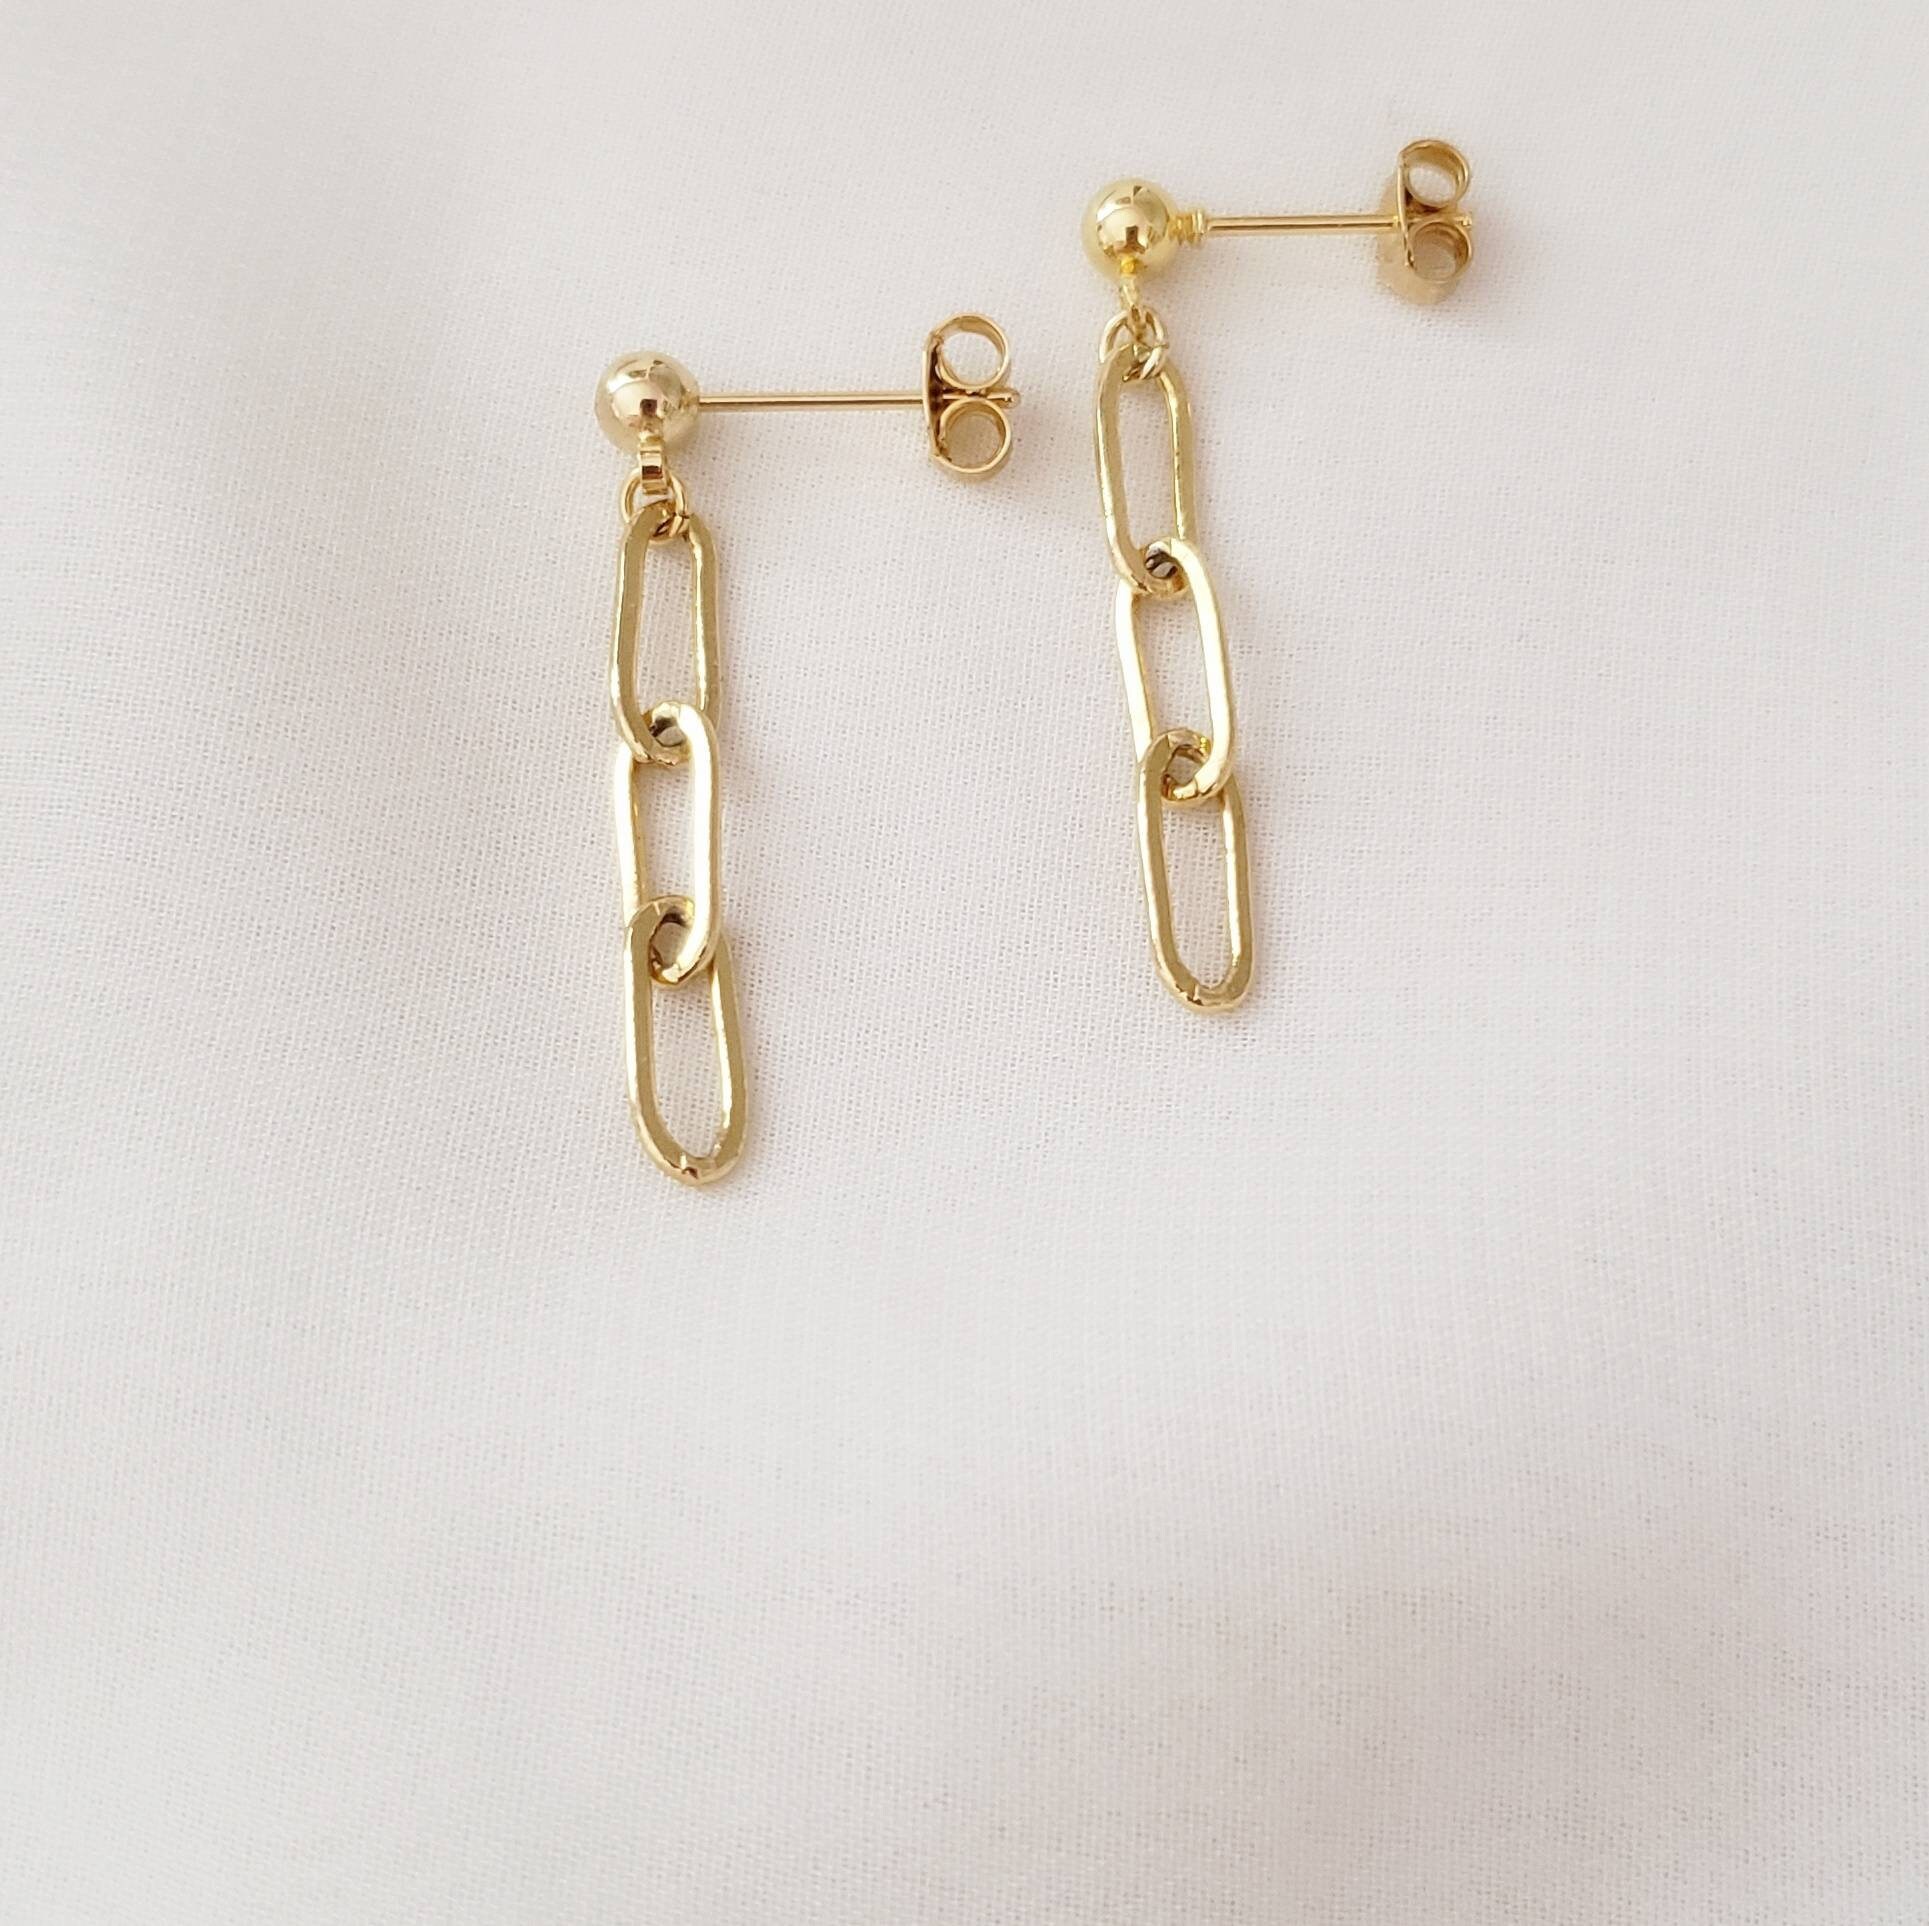 Link Earrings Gold Link Earrings Link Chain Earrings | Etsy